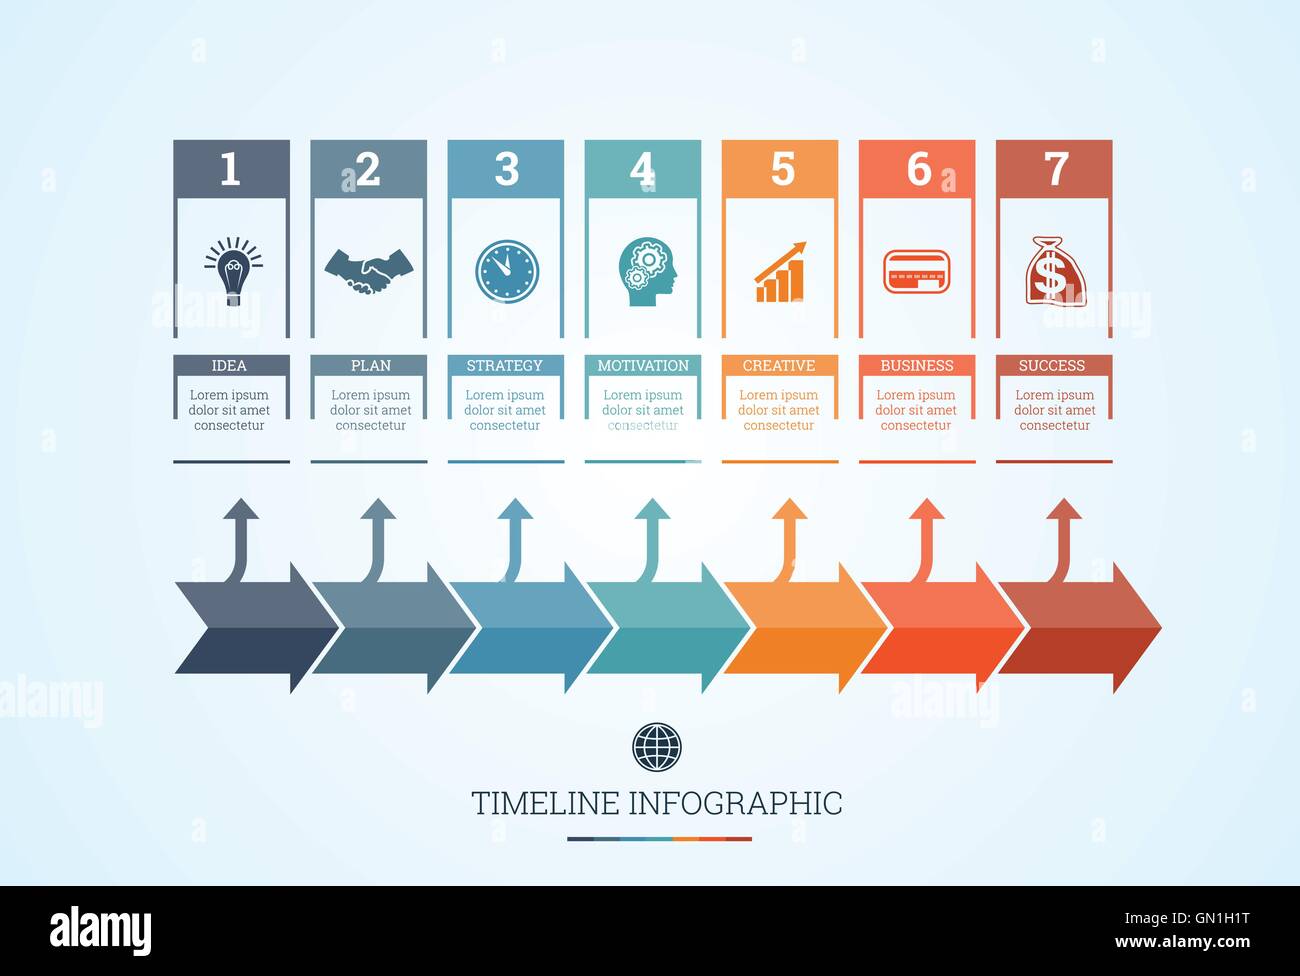 creative timeline design ideas